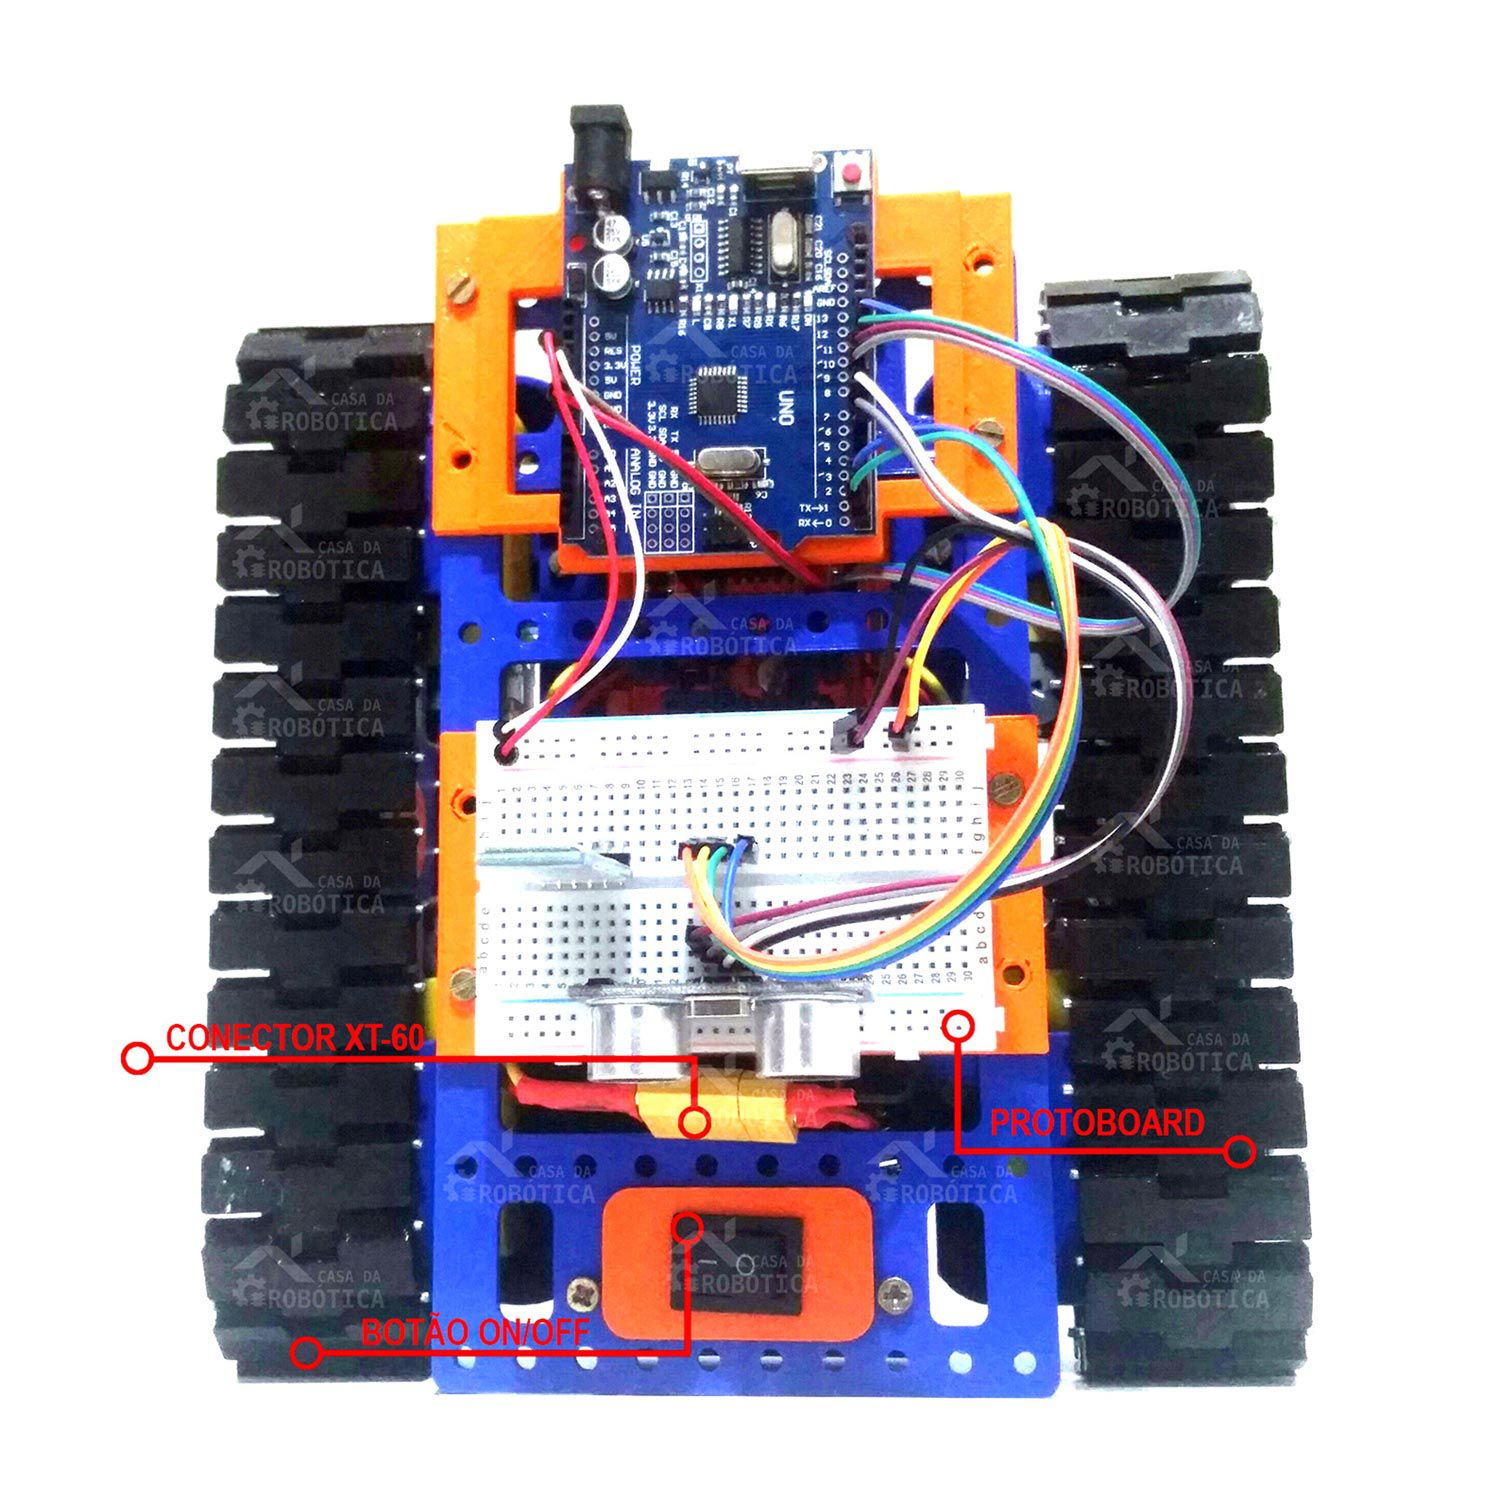 Plataforma Robótica Educacional Tank / Esteira Com Placa Compatível com Arduino